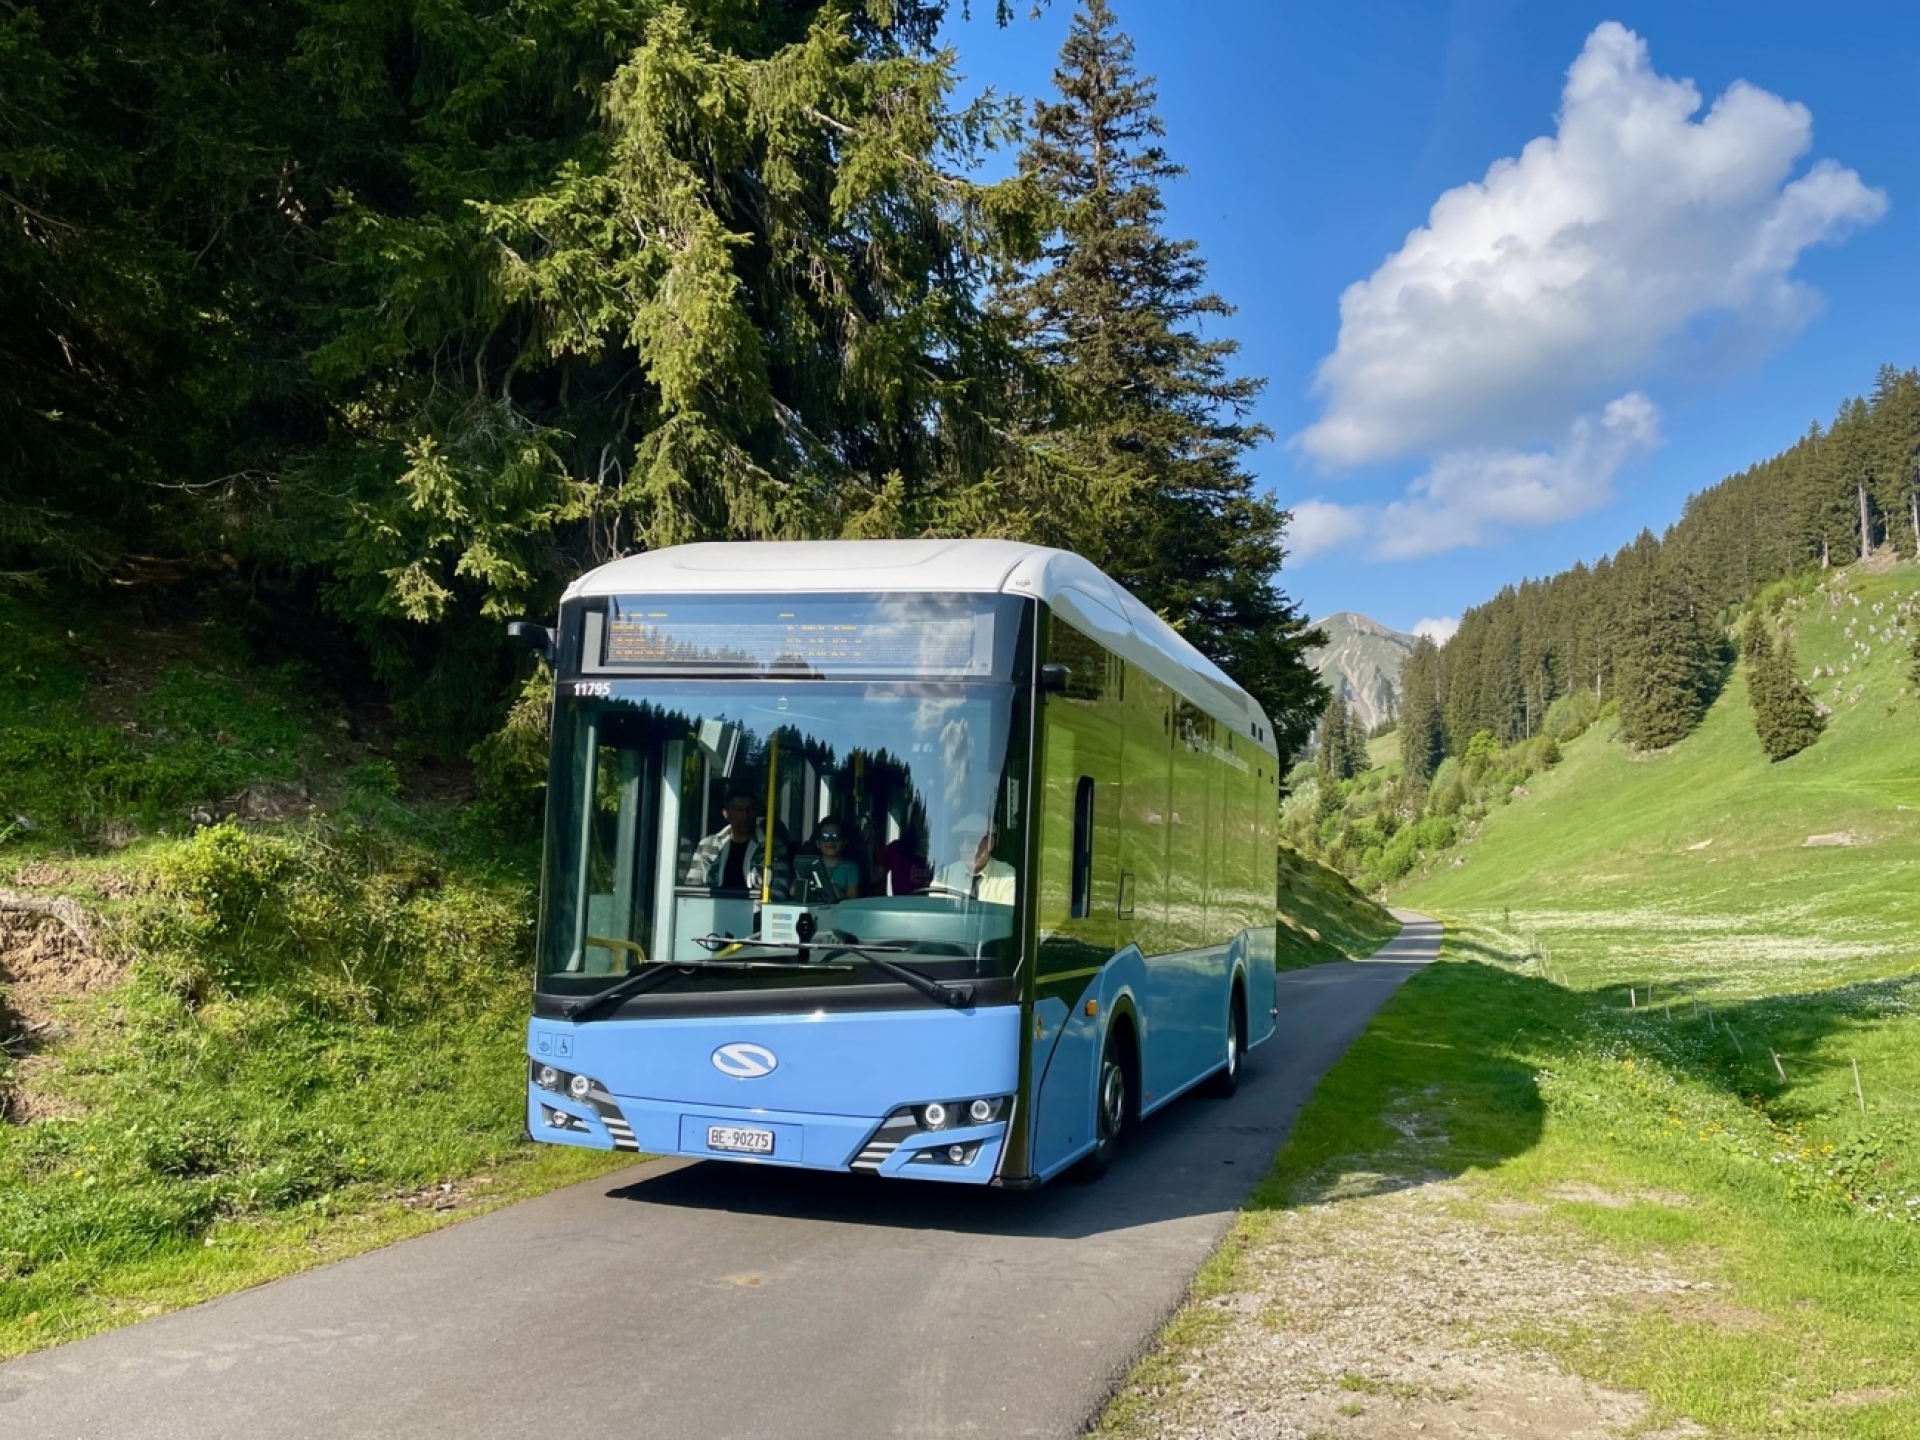 «Schlumpfine» – wie das blaue Postauto liebevoll genannt wird – erfreut Touristen und Touristiker gleichermassen. (Foto: AvS)